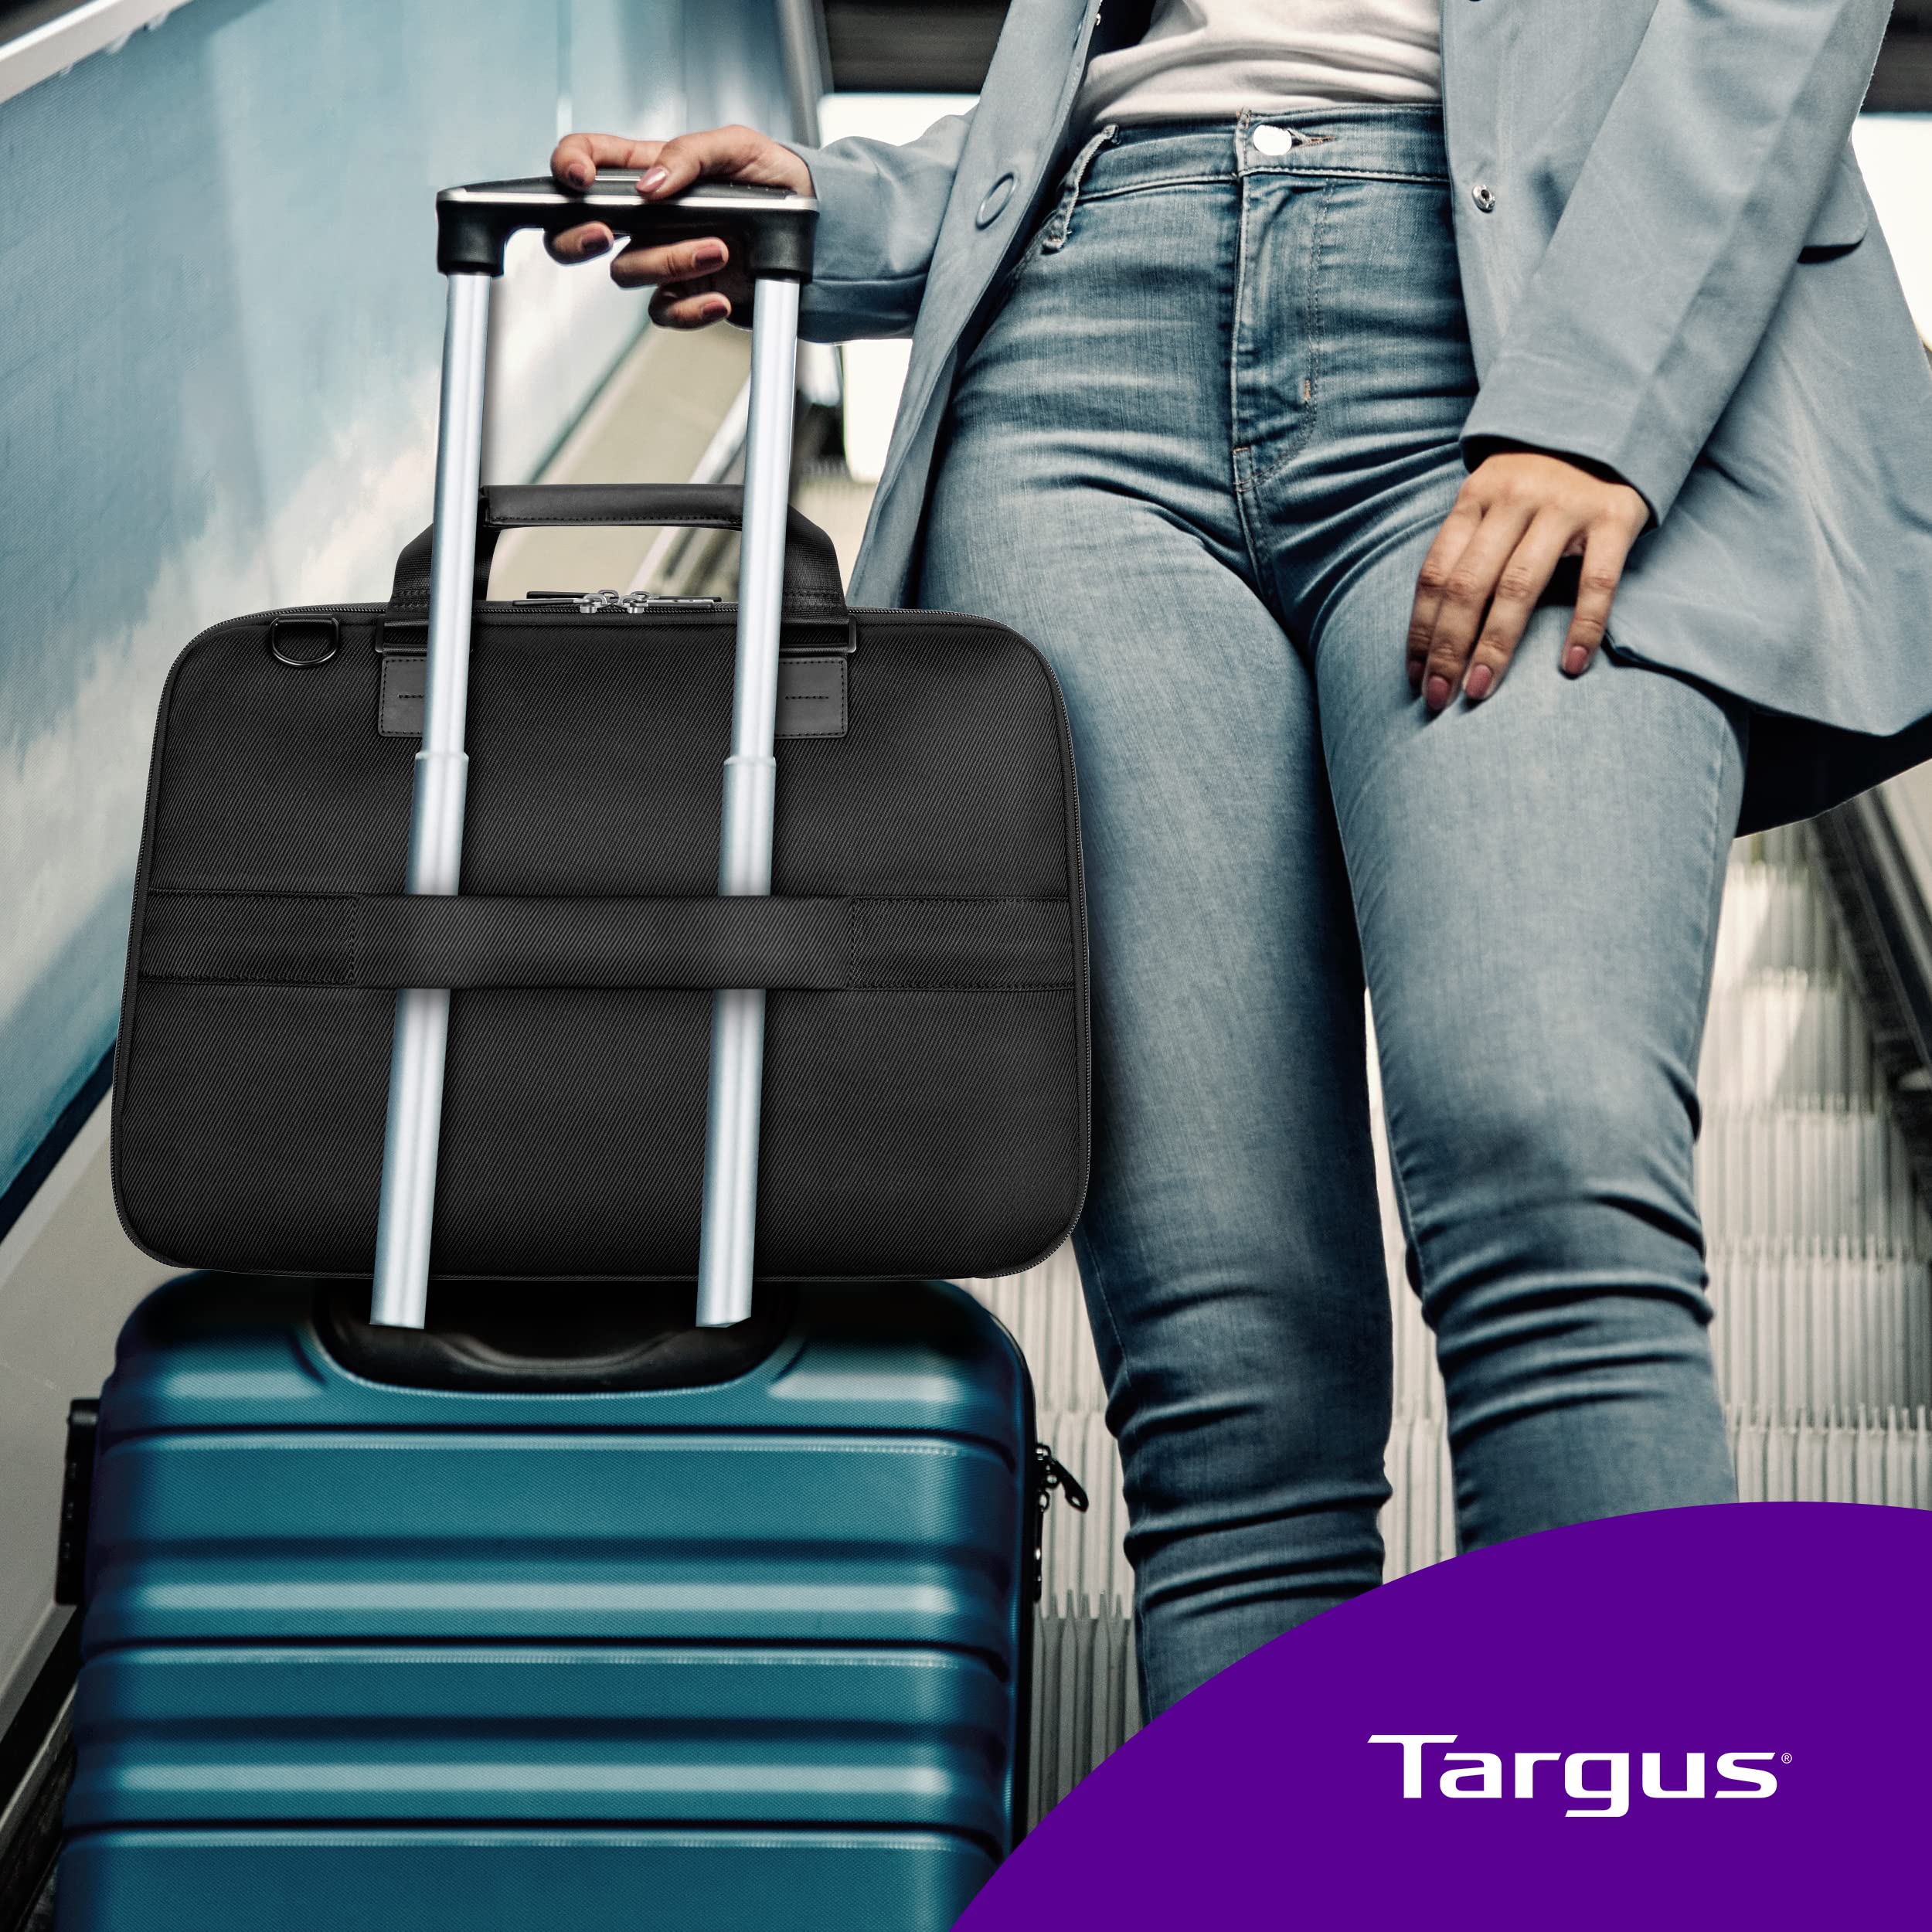 Targus Mobile Elite Laptop Bag for 15.6-inch Laptops, TSA Checkpoint-Friendly Design, Messenger Bag for Men /Women, Computer Bag & Laptop Case for Mac/PC/Dell/Lenovo/HP, Black (TBT045US)